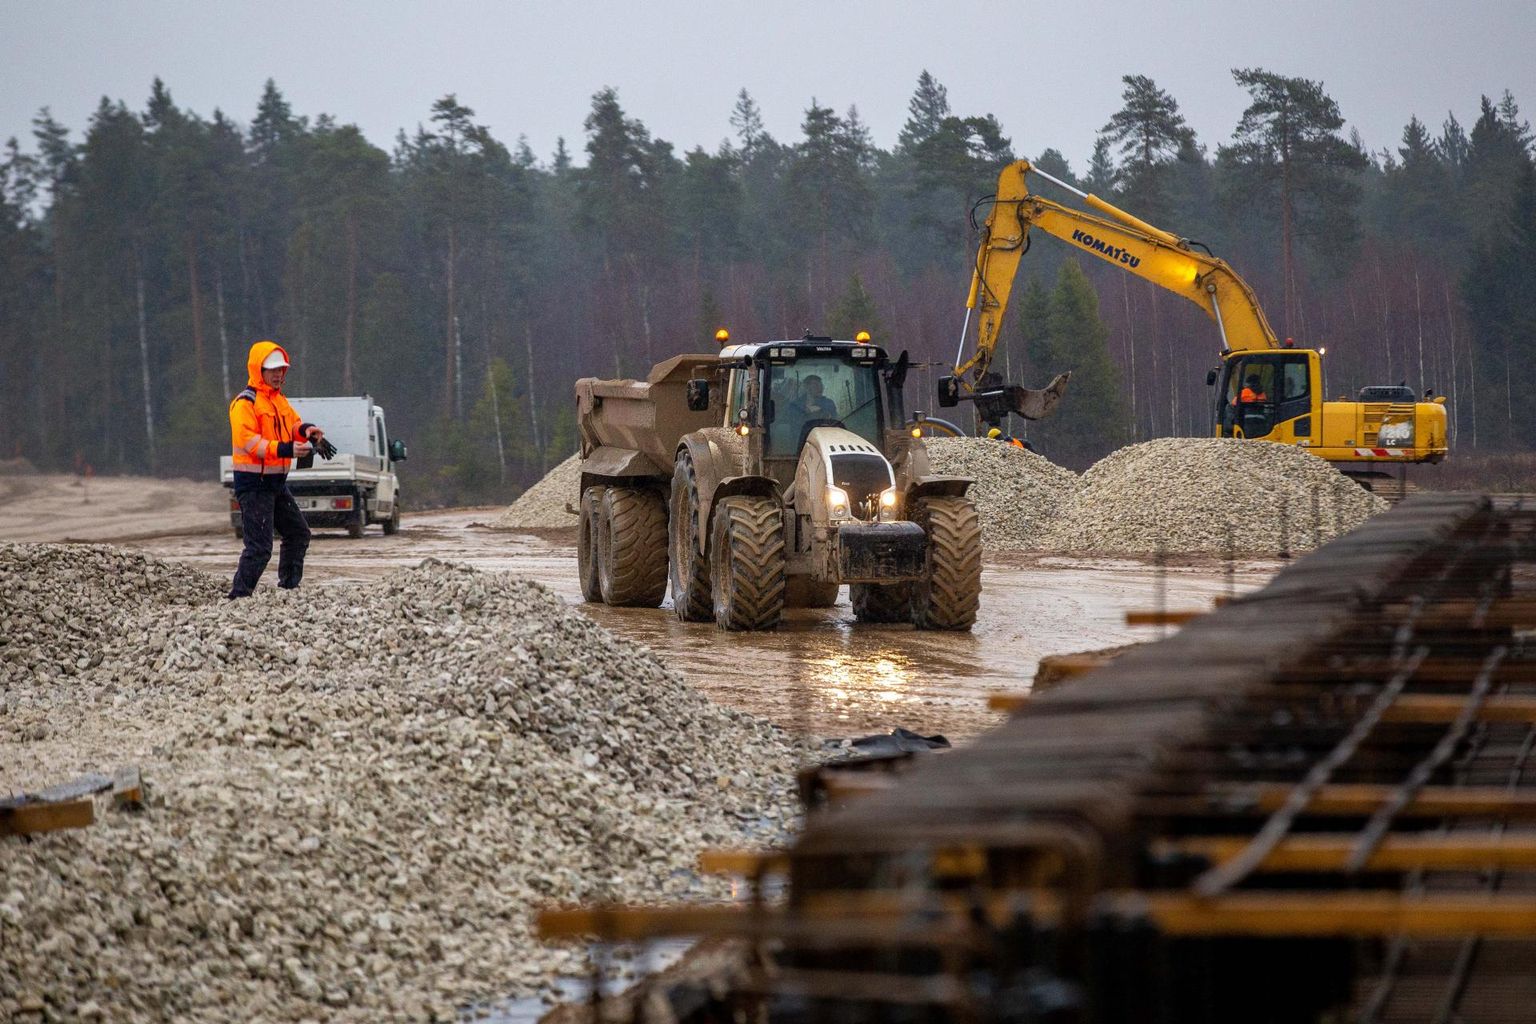 Iga uus neljarajaline maanteelõik toob maanteedele uusi autosid juurde. Tallinna-Tartu maantee Võõbu-Mäo neljarajalise lõigu ehitus.